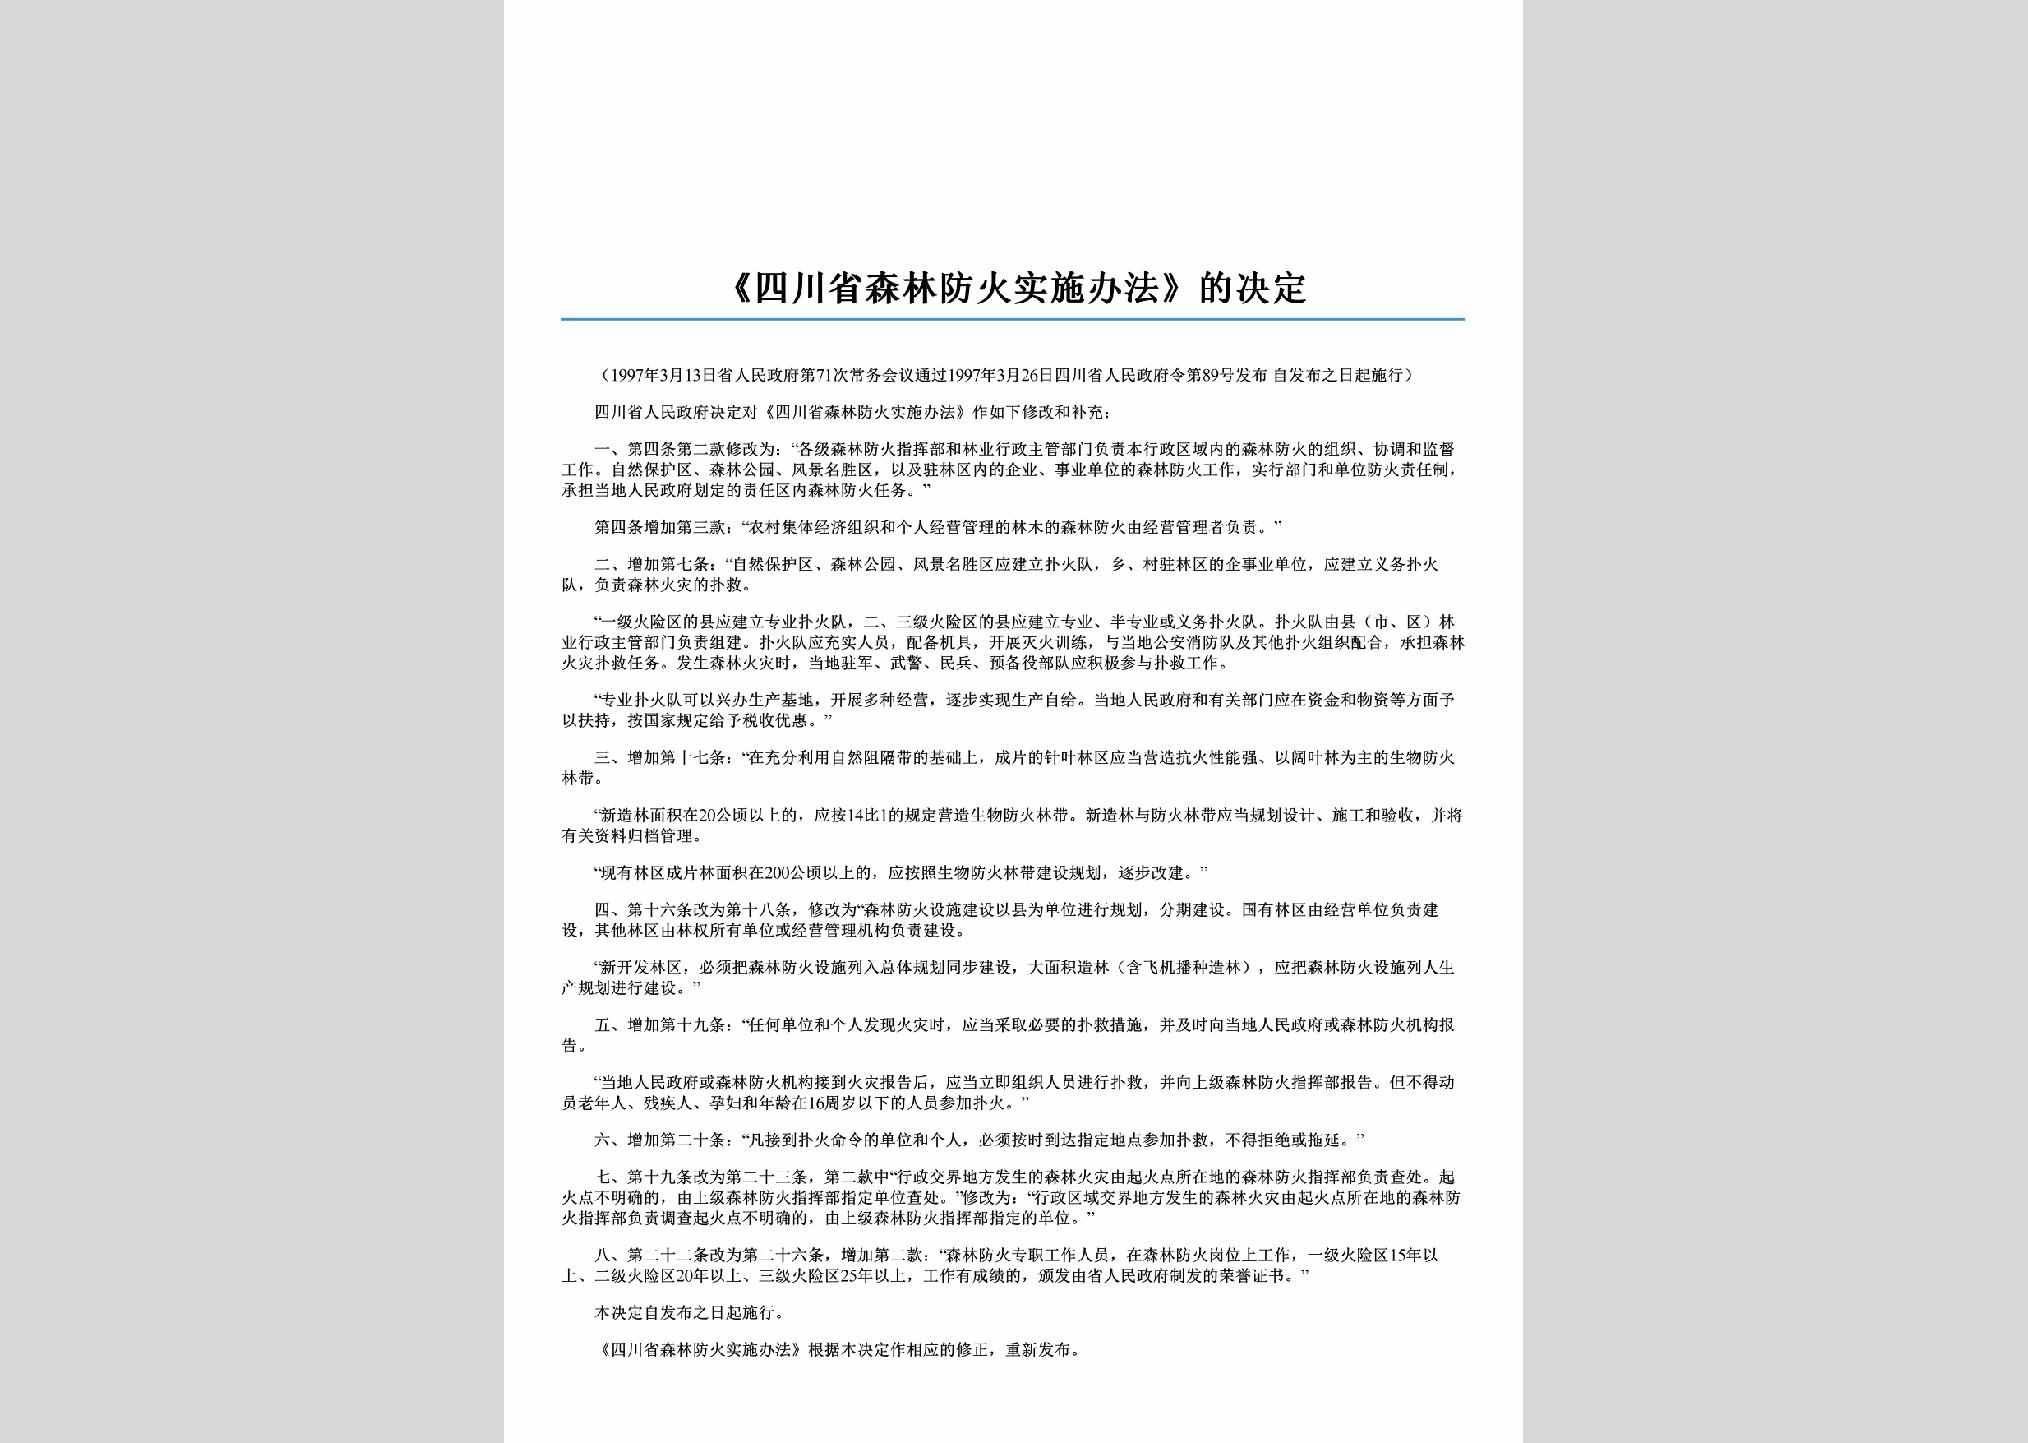 四川省人民政府令第89号：《四川省森林防火实施办法》的决定